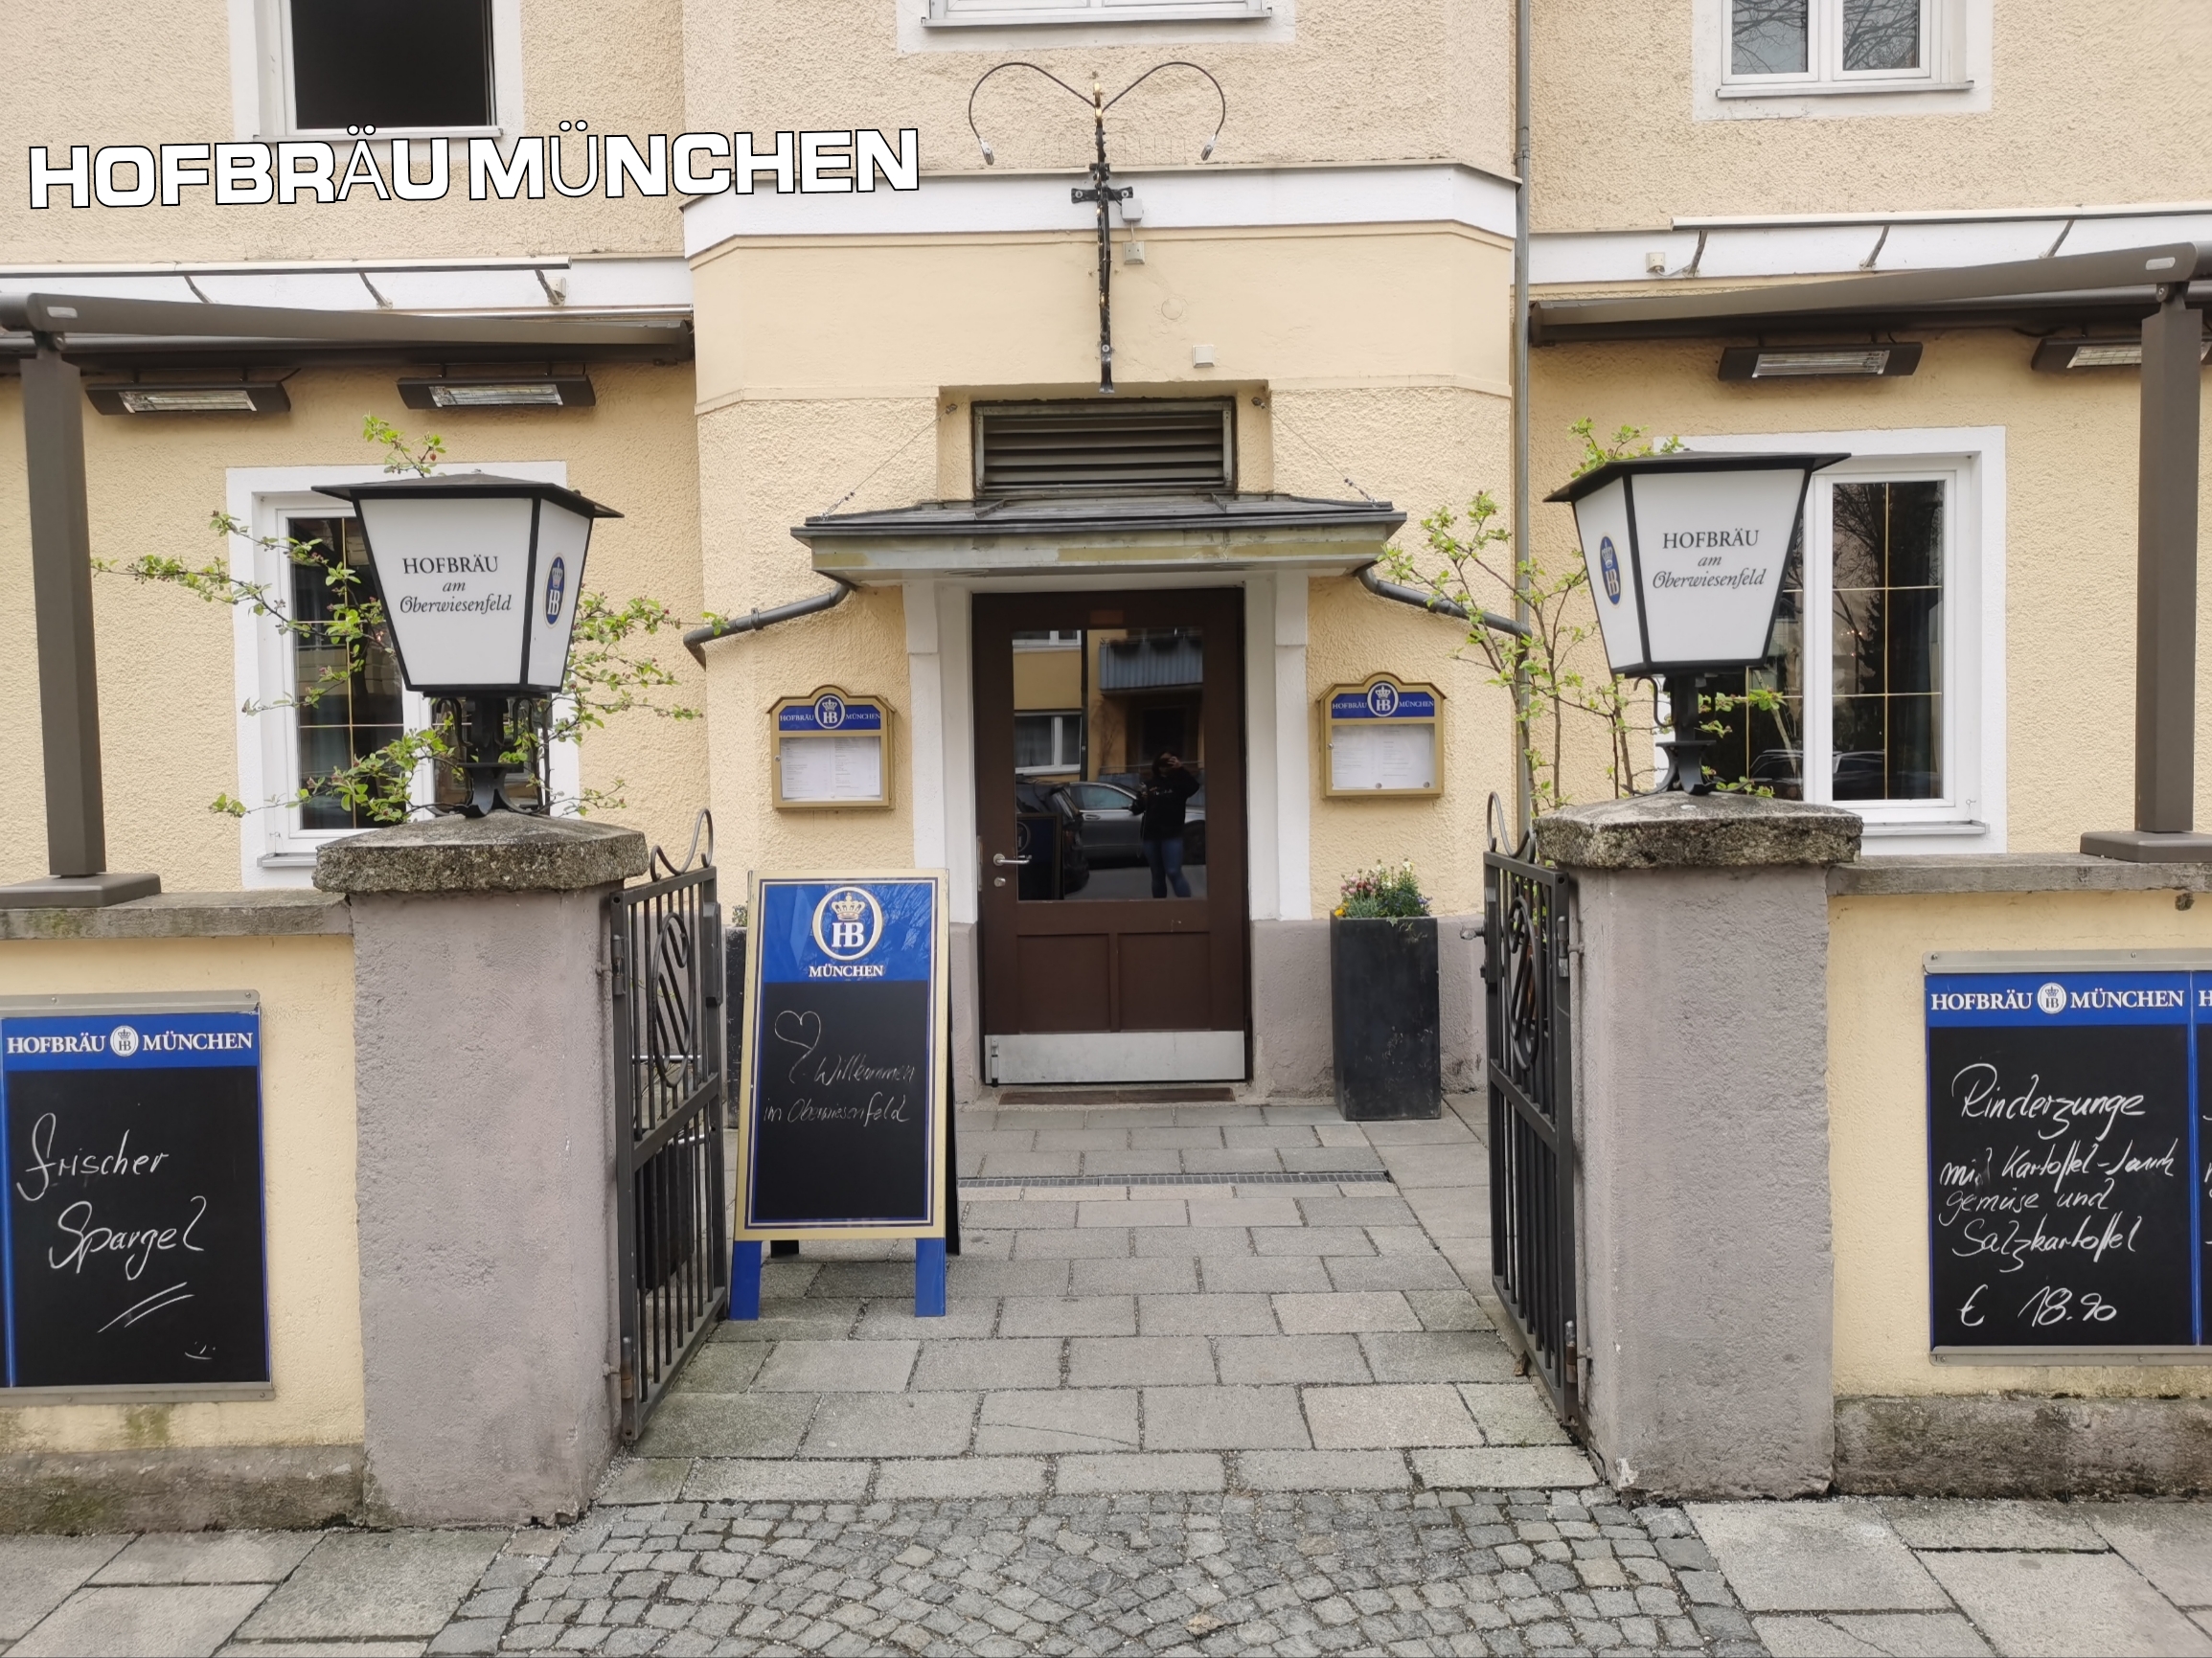 HOFBRÄU MÜNCHEN 藏在住宅区的德国传统菜 🇩🇪